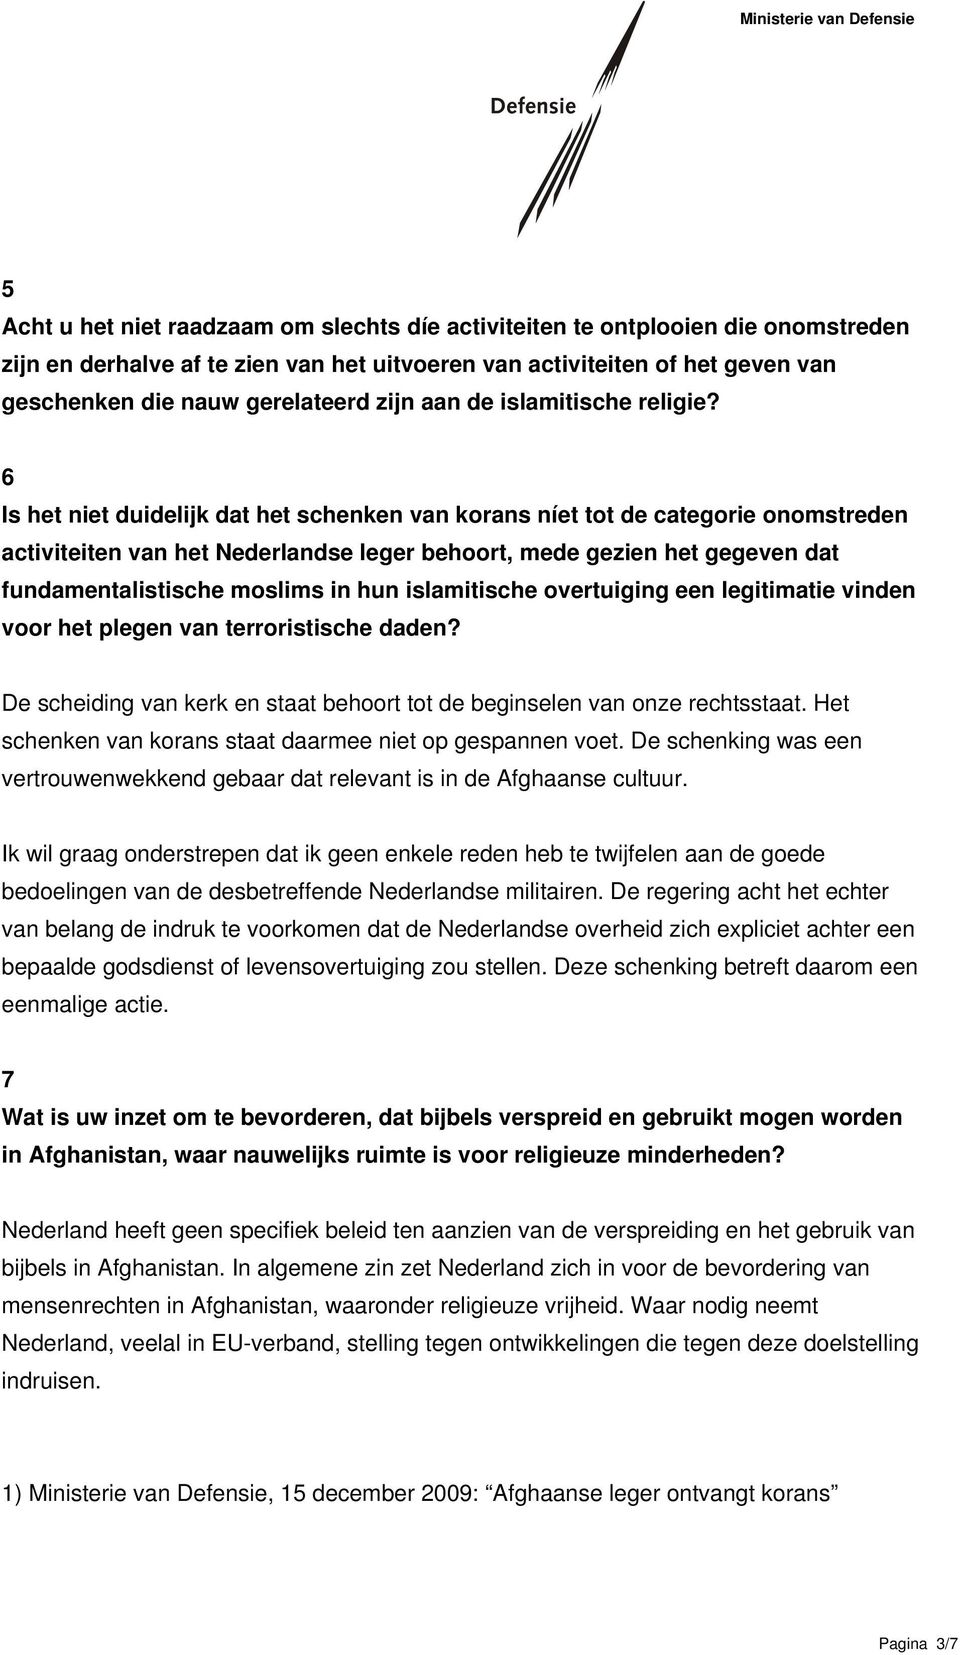 6 Is het niet duidelijk dat het schenken van korans níet tot de categorie onomstreden activiteiten van het Nederlandse leger behoort, mede gezien het gegeven dat fundamentalistische moslims in hun